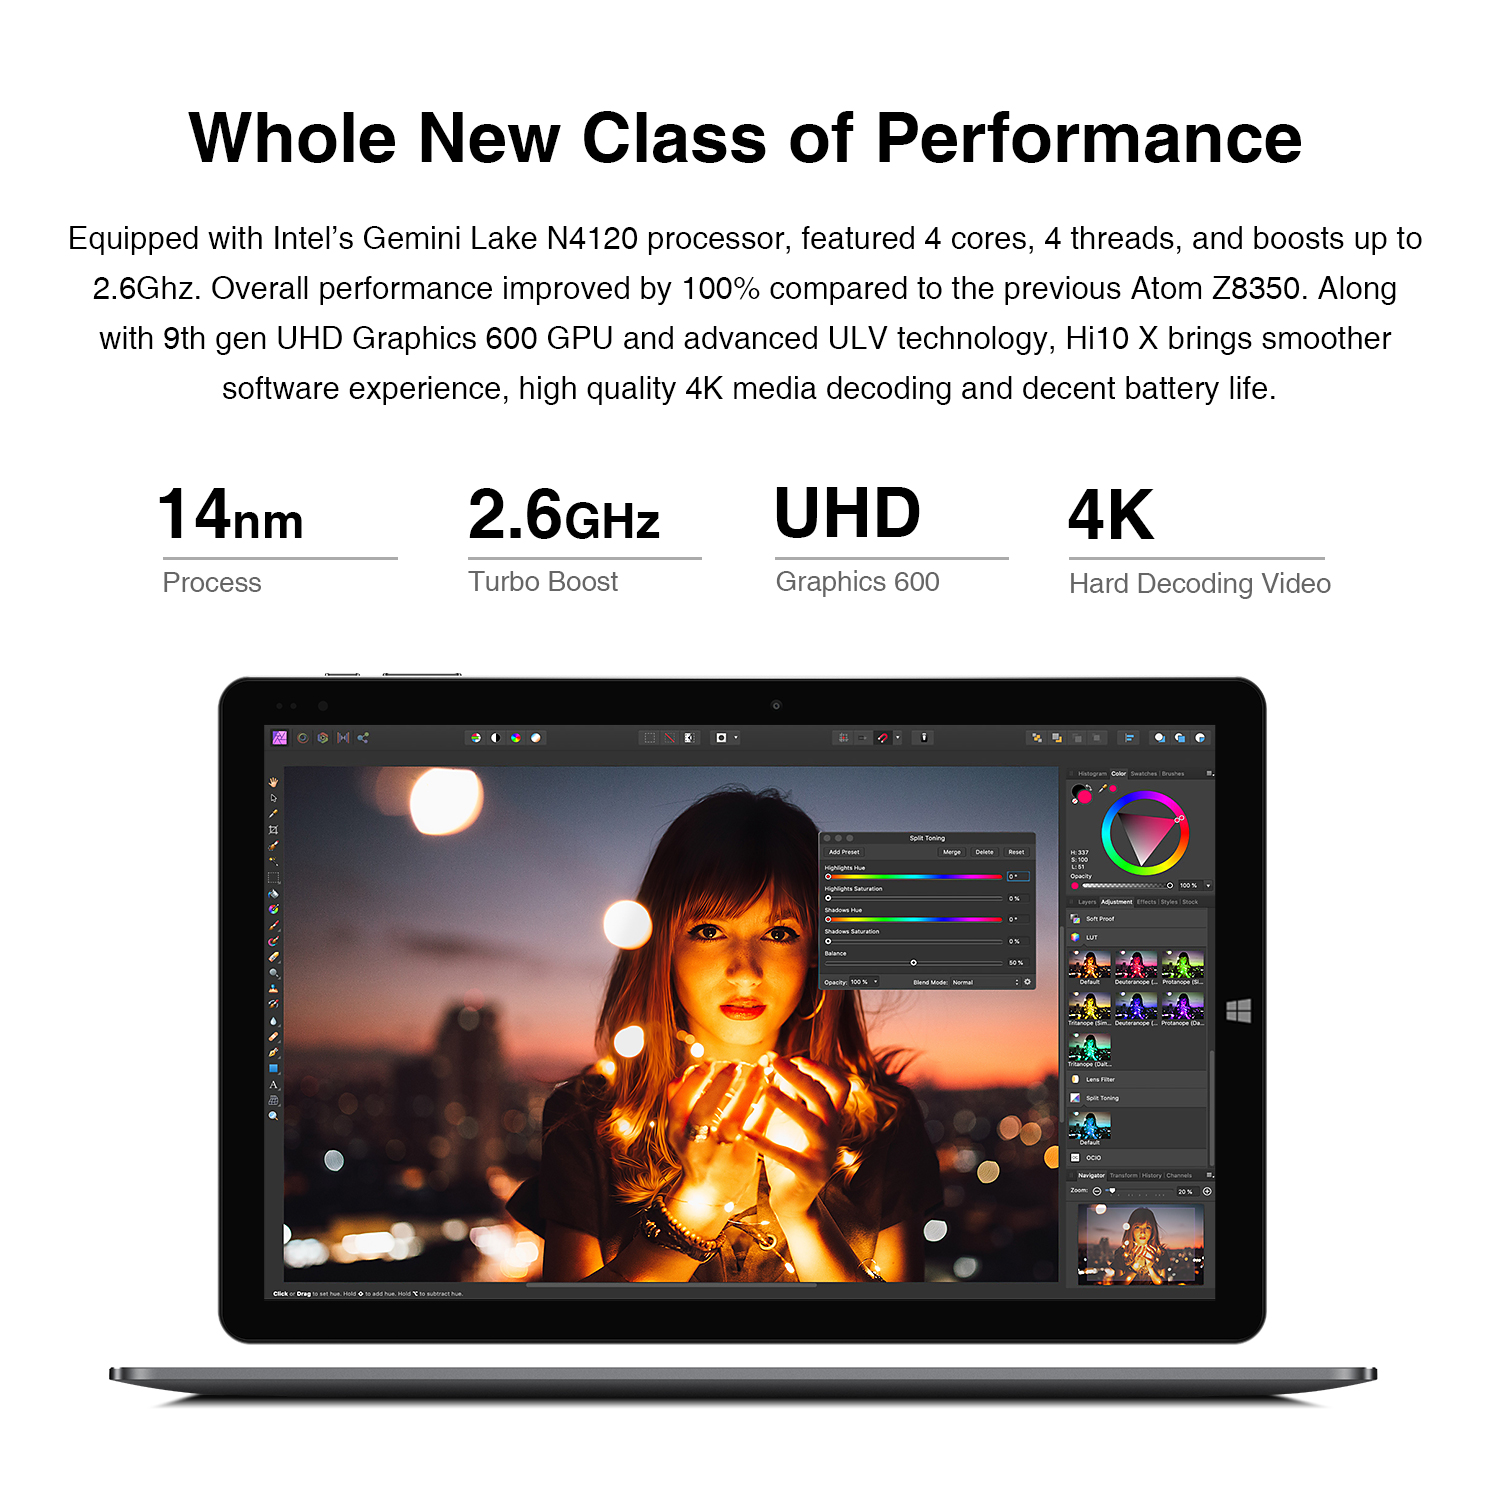 【CHUWI OFFICIAL】Hi10 X 2-in-1 Genuine Windows 11 Tablet PC / 10.1 Inch 1920x1200 FHD Screen / Intel® N4120 CPU /...